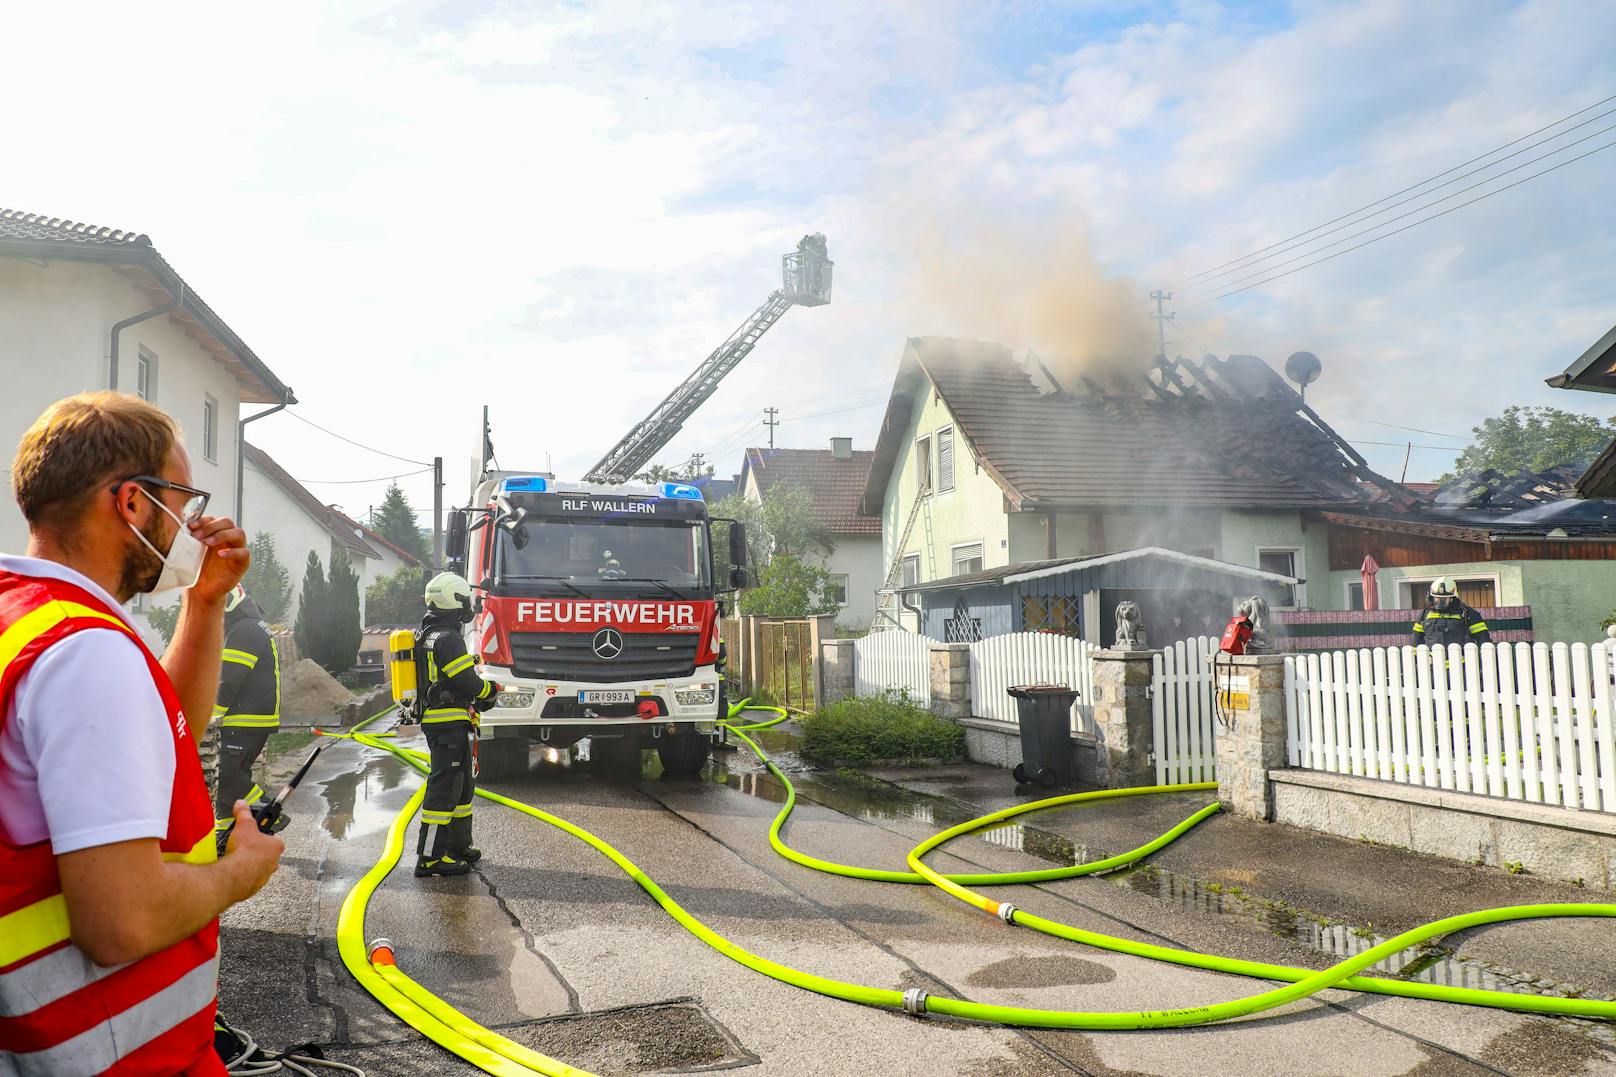 Wohnhaus ging wegen Kompressor in Flammen auf